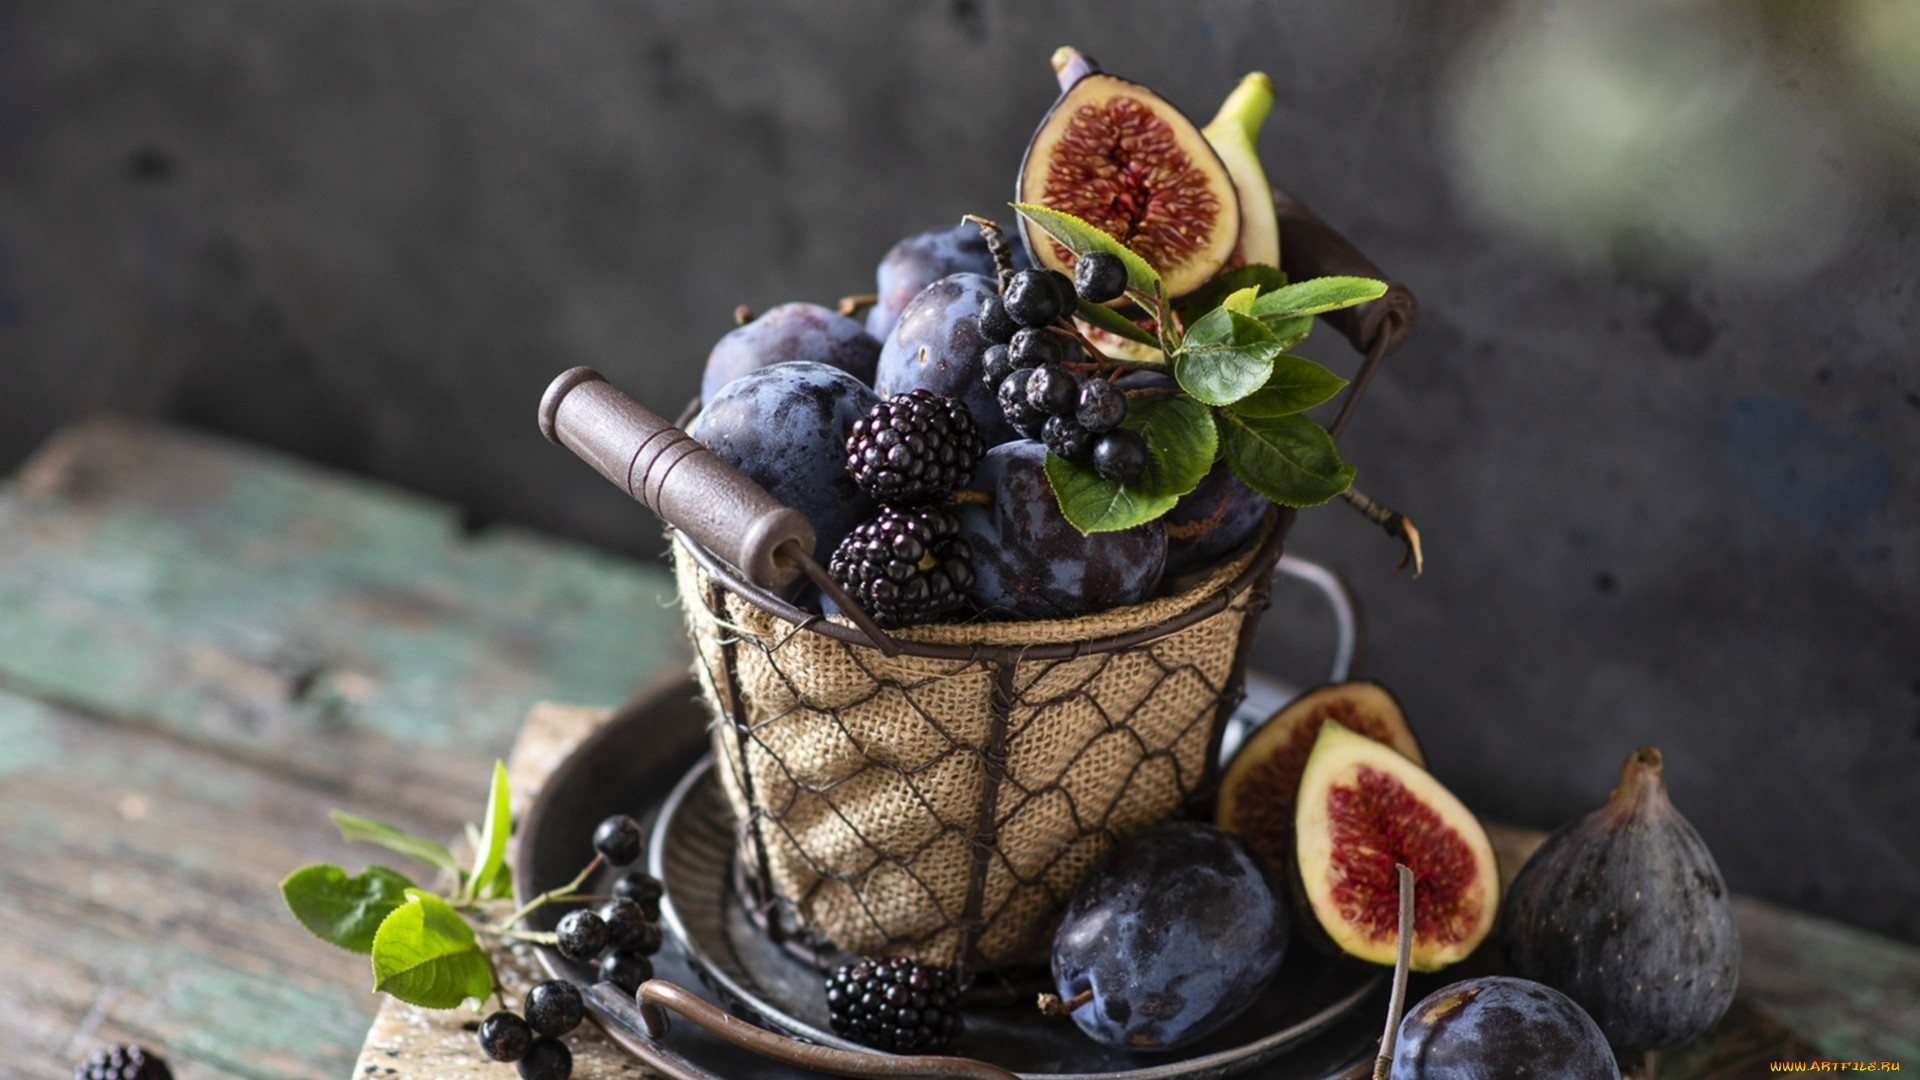 General 1920x1080 food fruit berries fig blackberries wooden surface